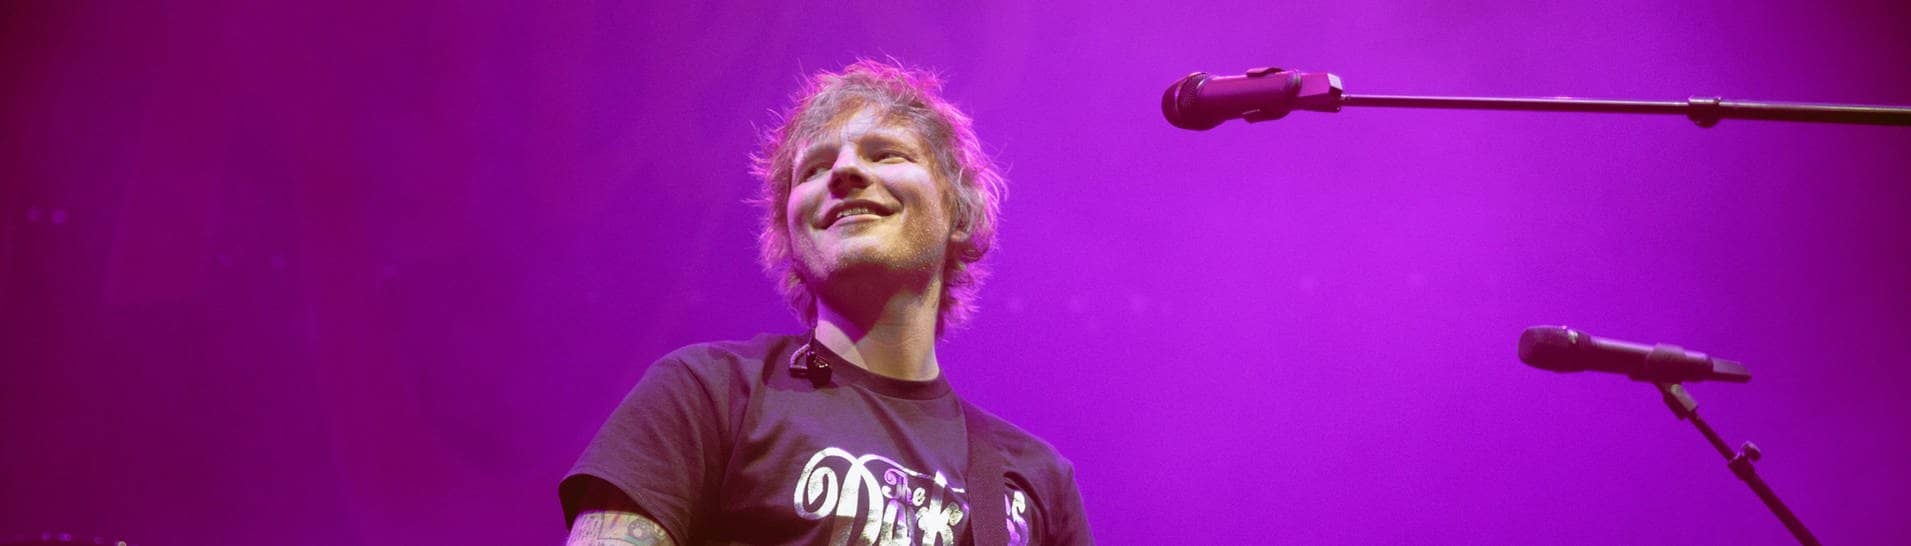 Sänger Ed Sheeran spielt während eines Konzerts Gitarre (Foto: IMAGO, IMAGO / Avalon.red)